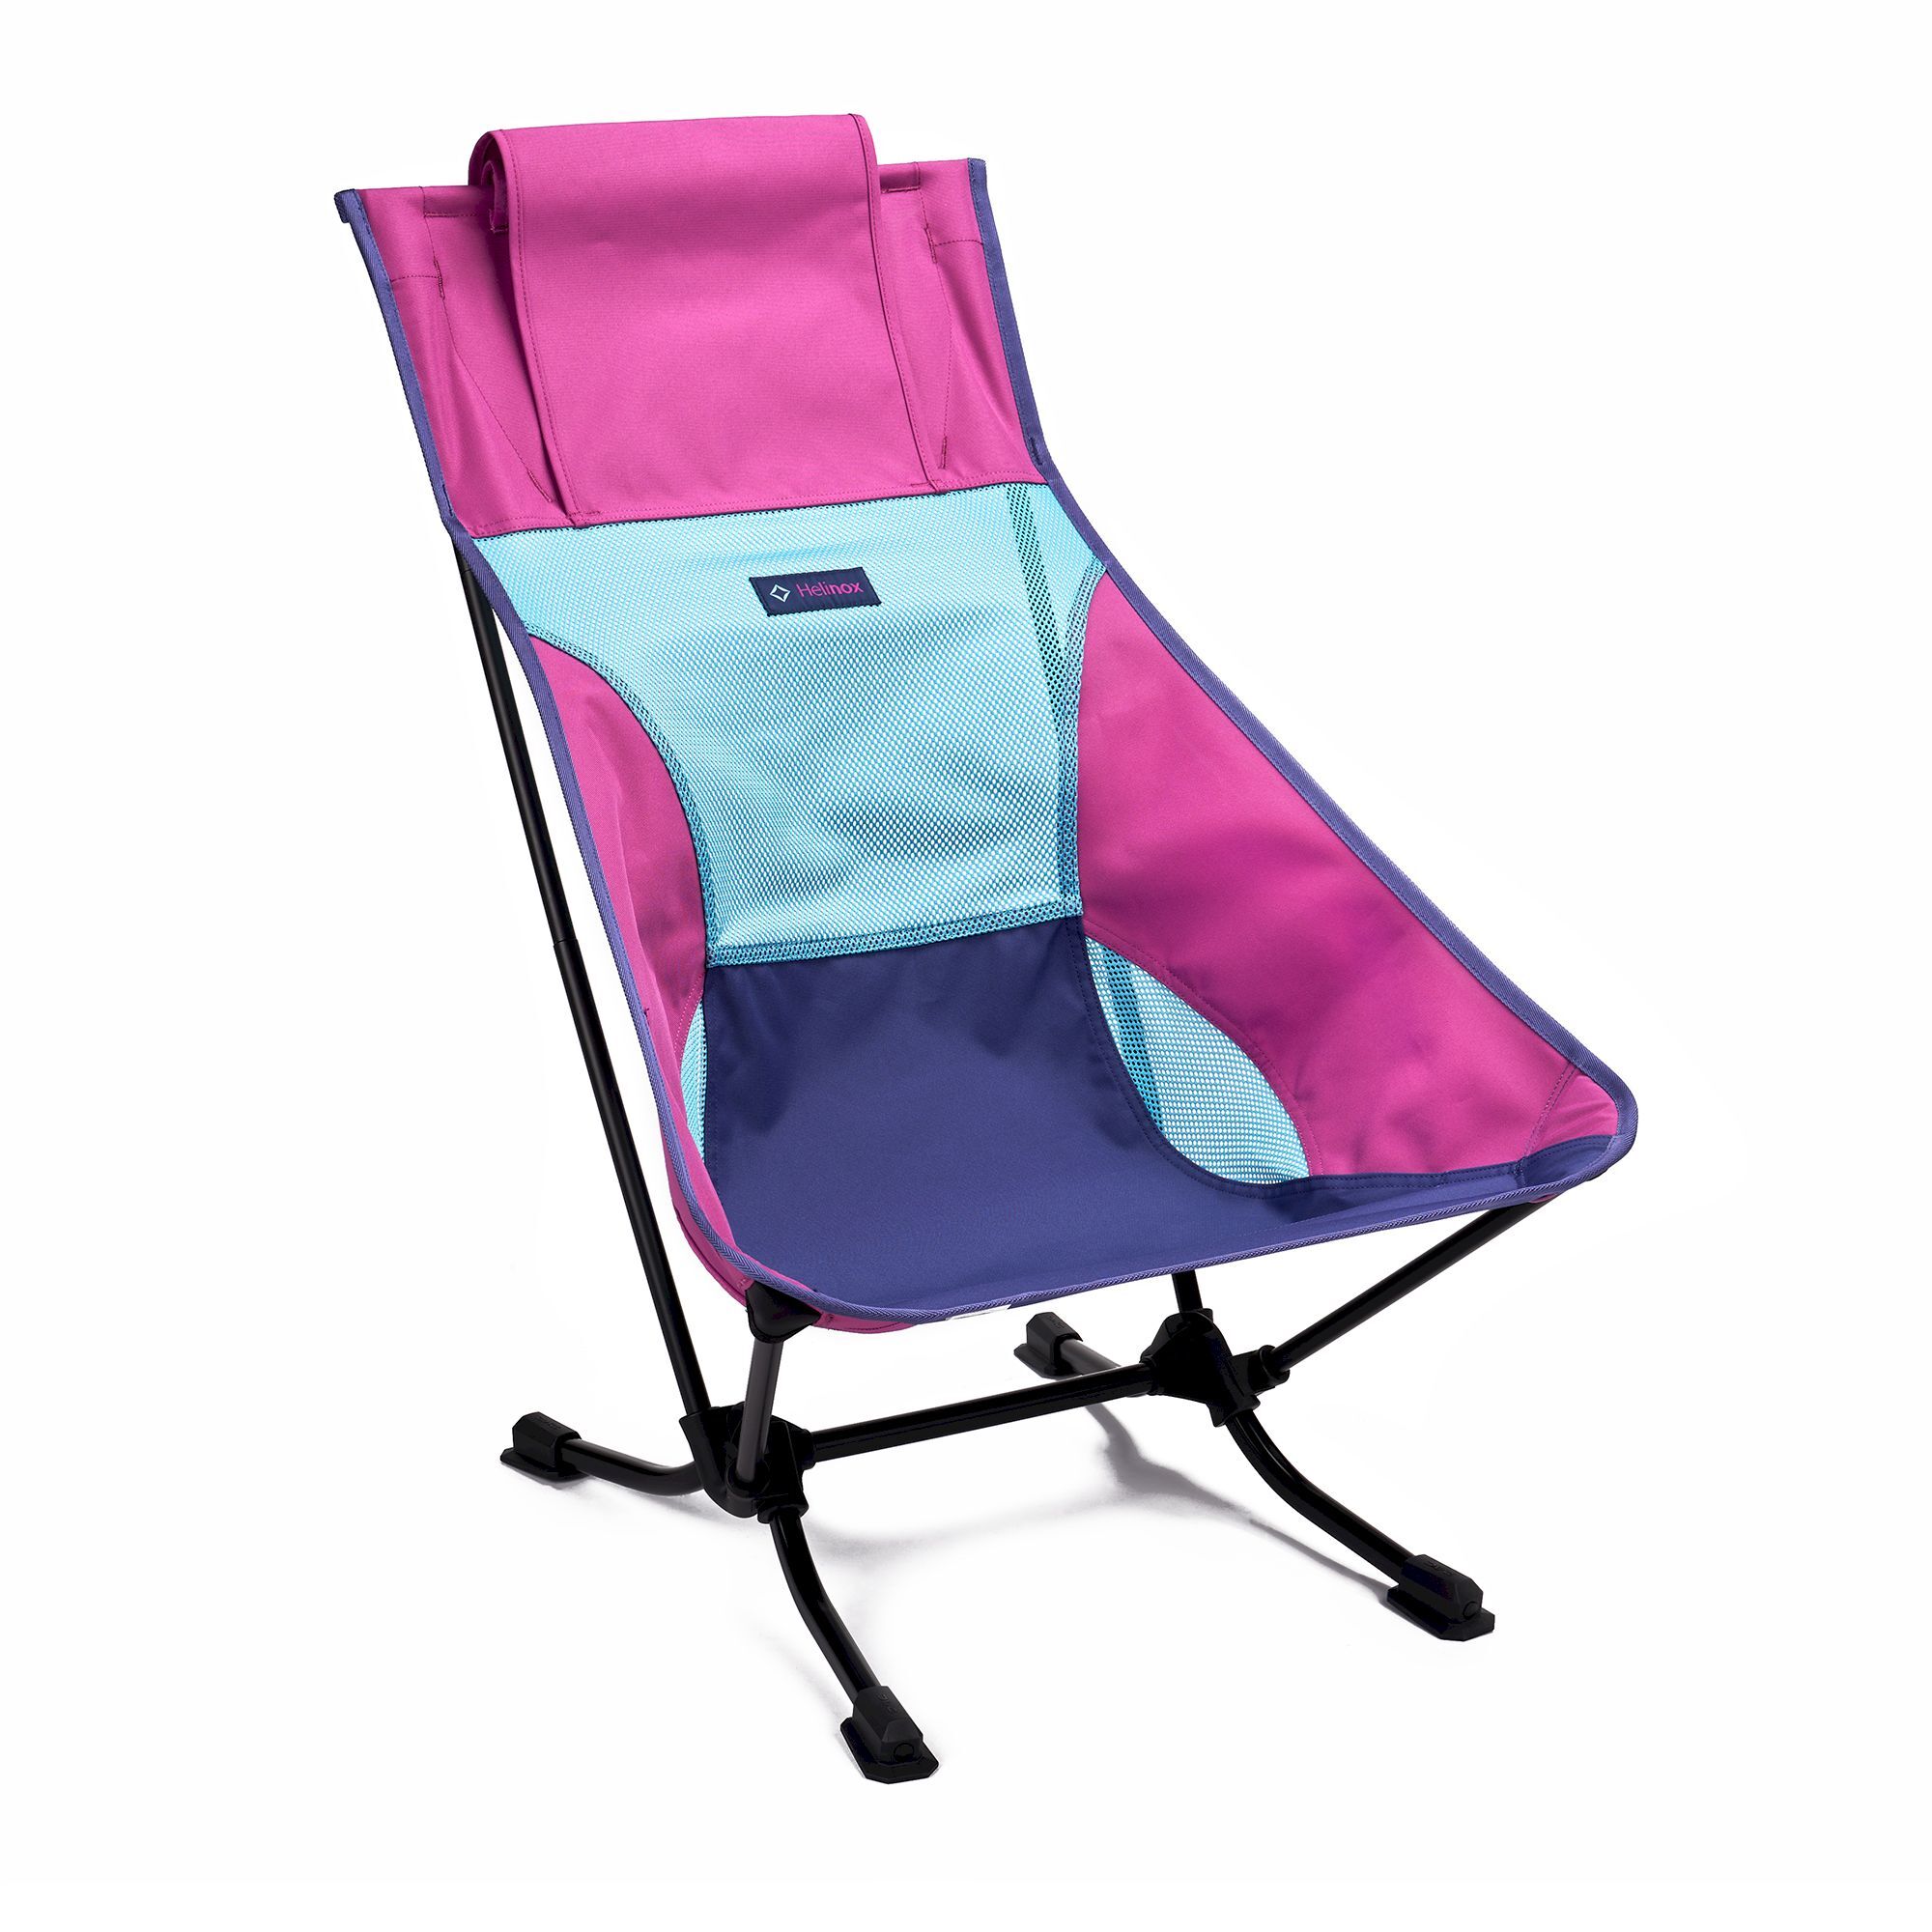 Helinox Beach Chair - Camping chair